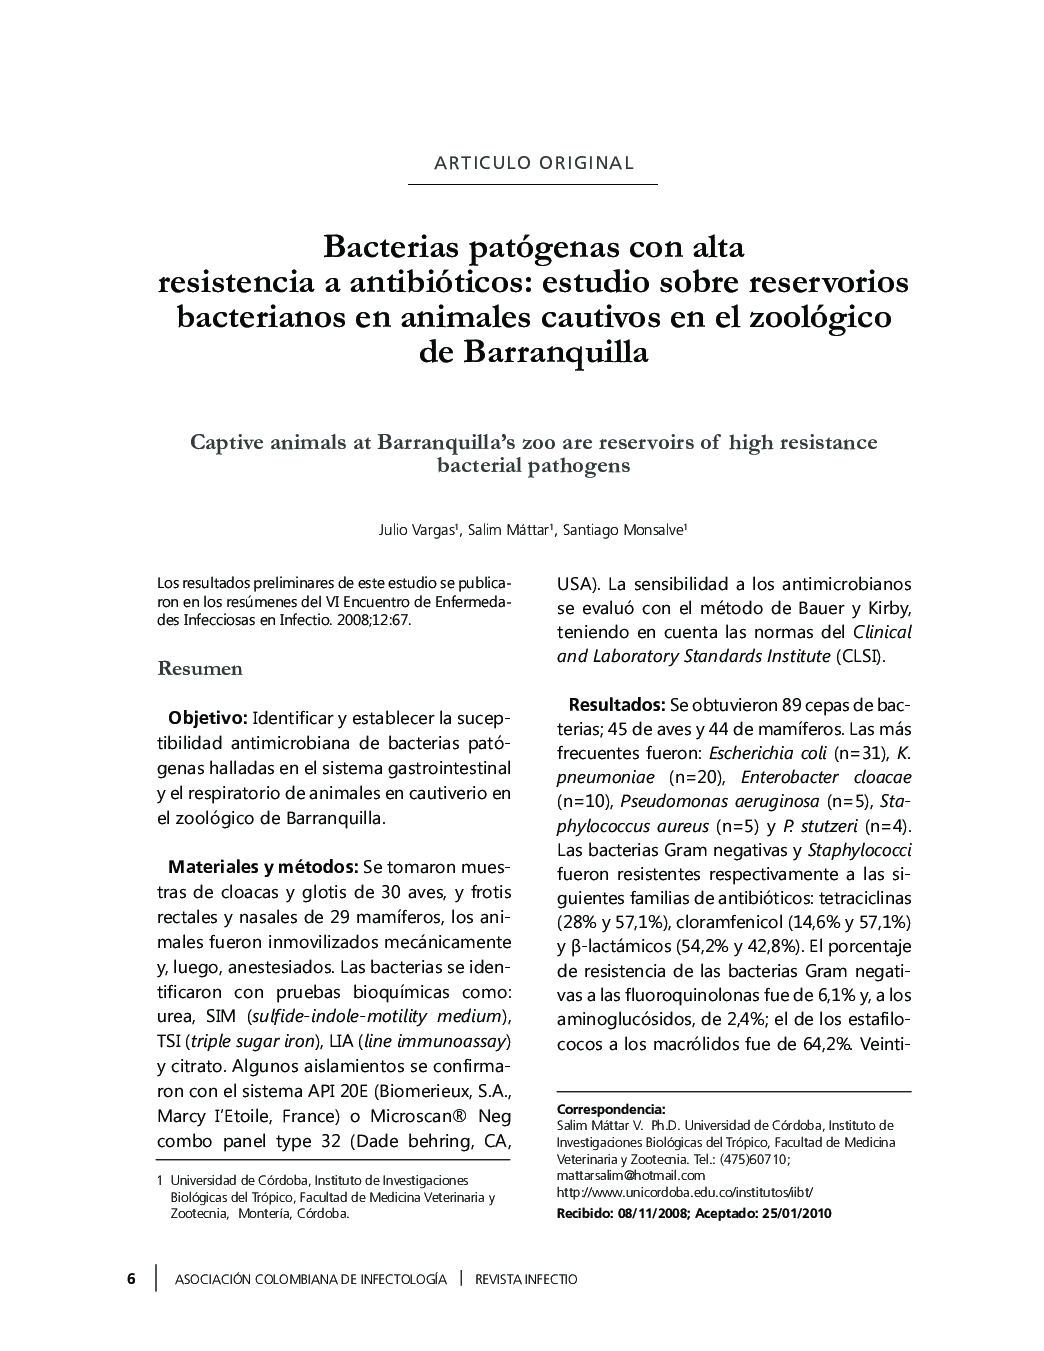 Bacterias patógenas con alta resistencia a antibióticos: estudio sobre reservorios bacterianos en animales cautivos en el zoológico de Barranquilla